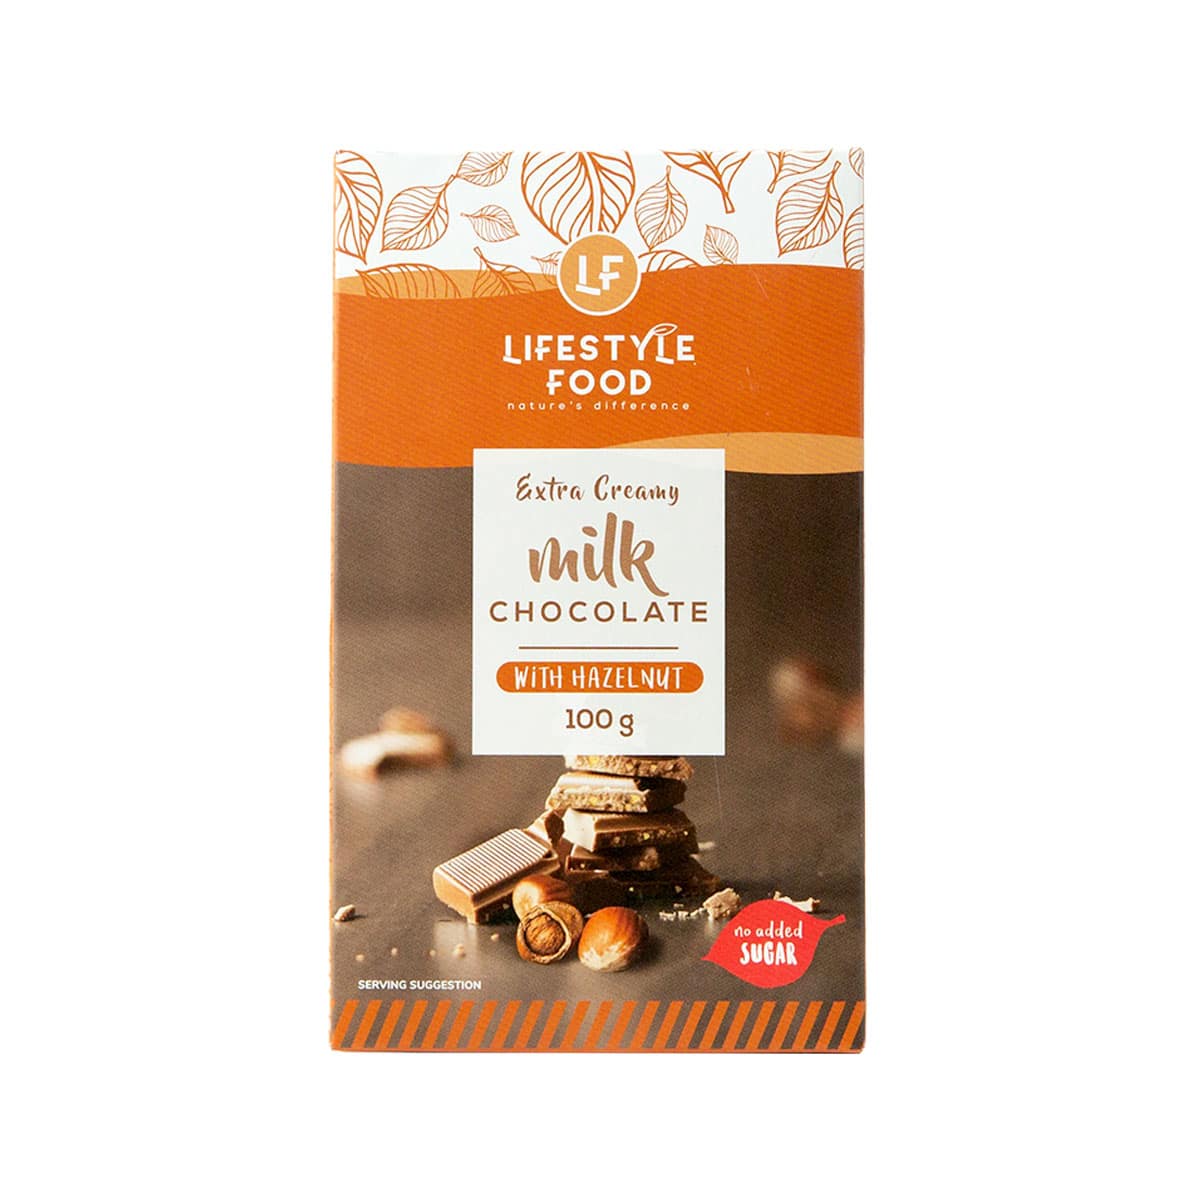 Lifestyle Food Milk Chocolate Hazelnut Slab No Added Sugar - 100g